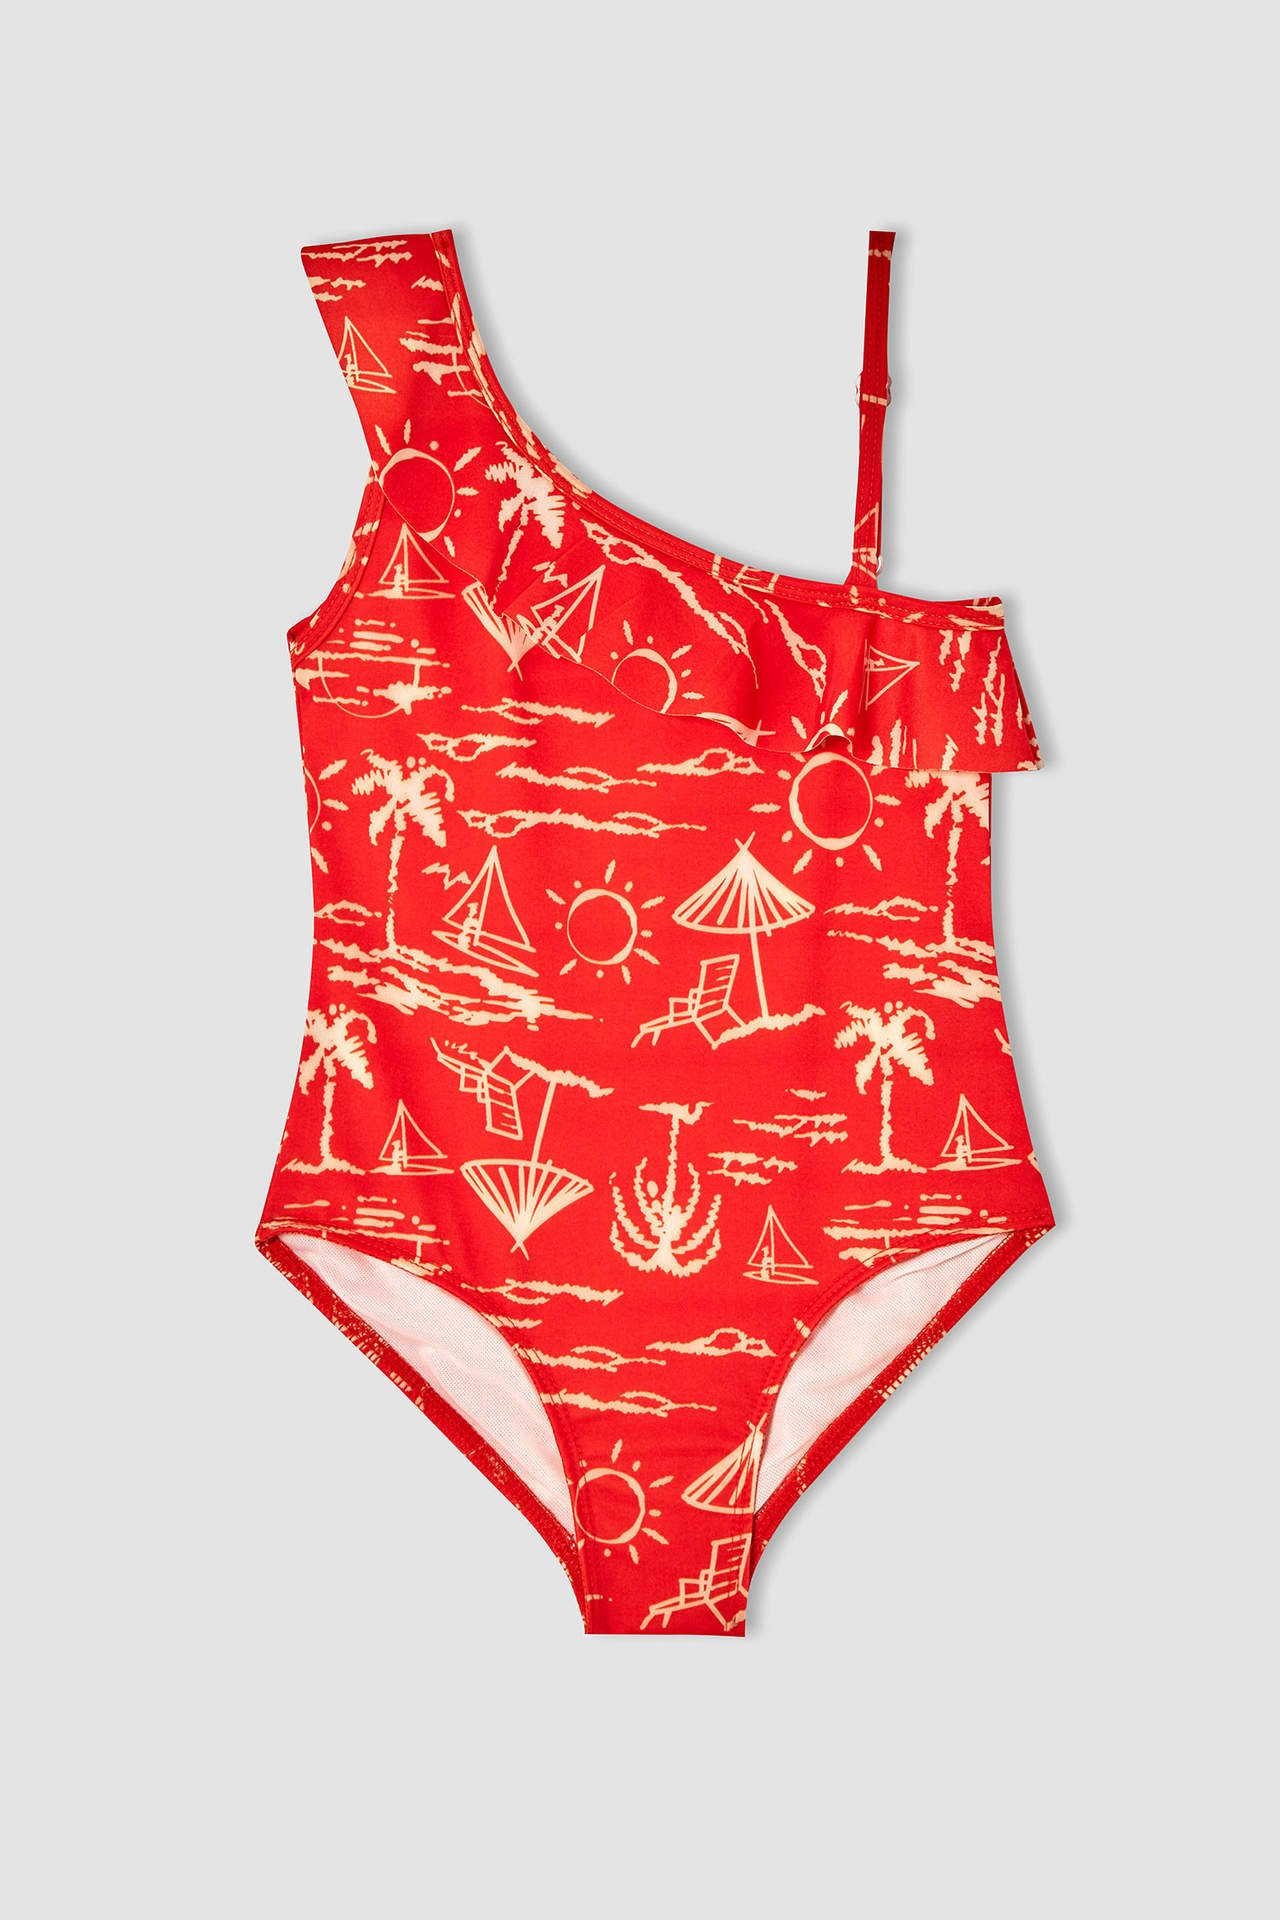 DEFACTO Girls' Swimwear